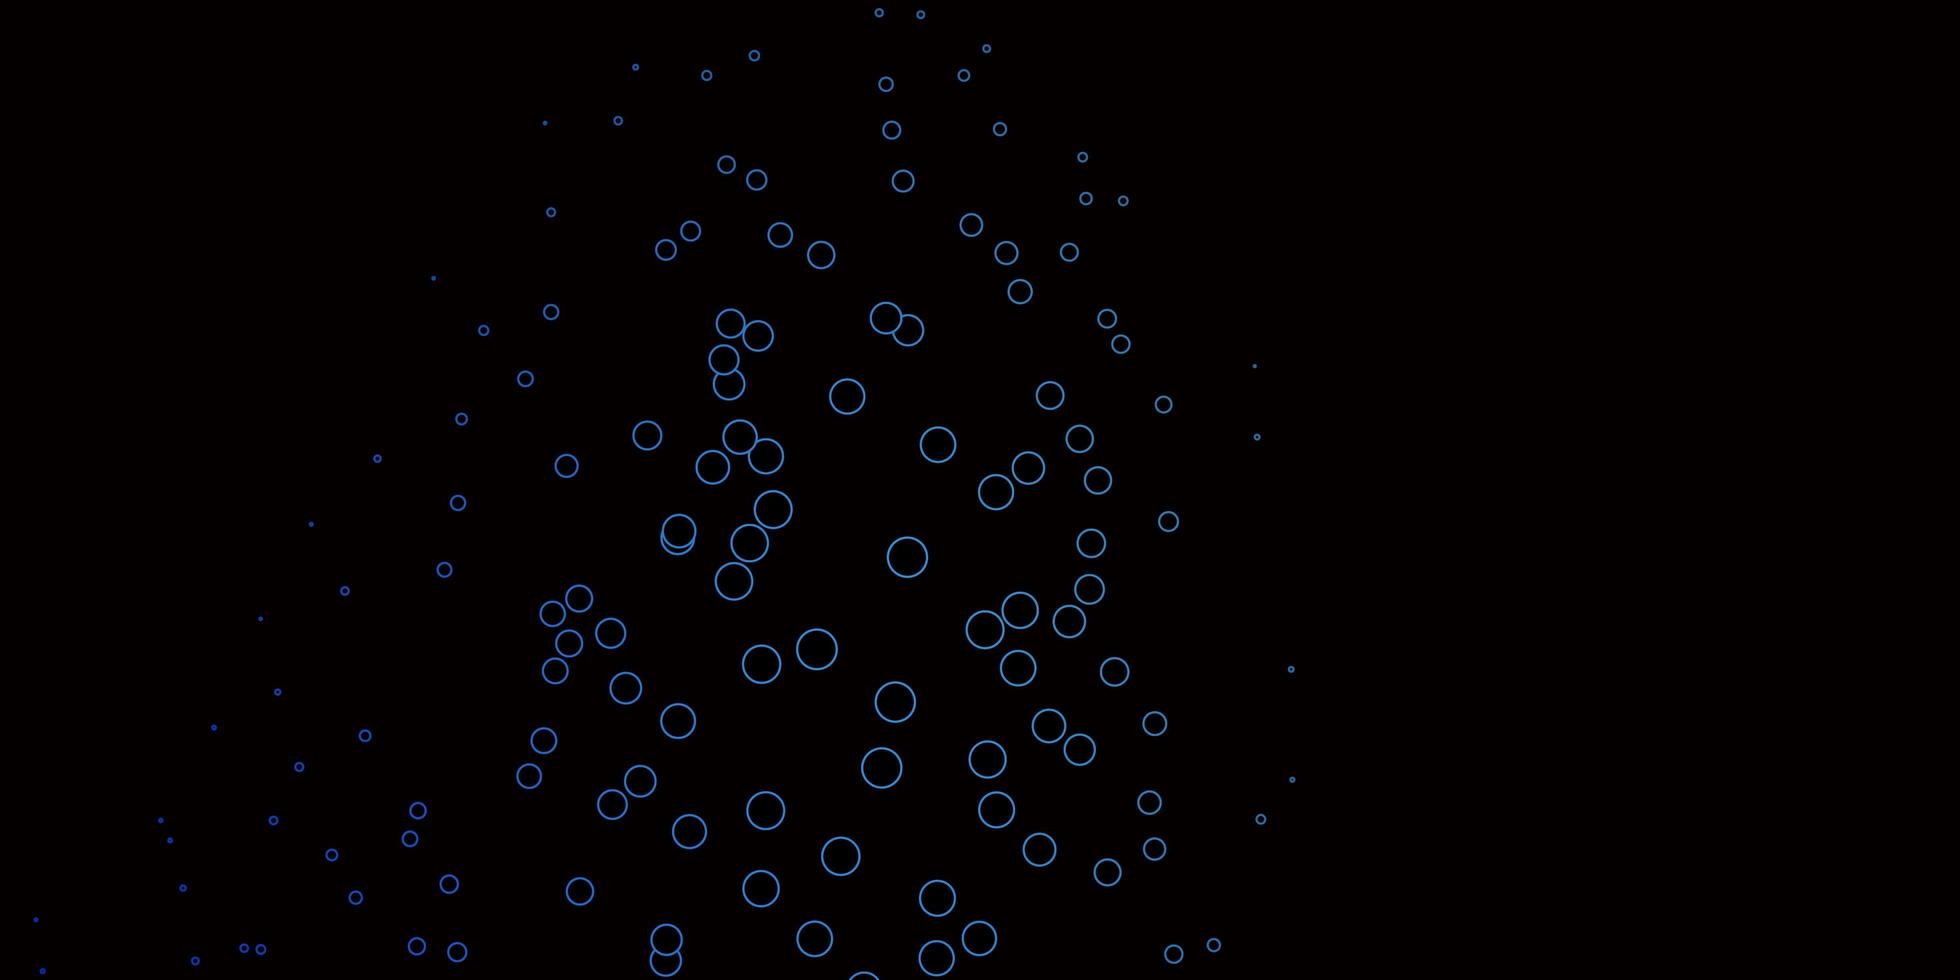 diseño de vector azul oscuro con formas circulares.